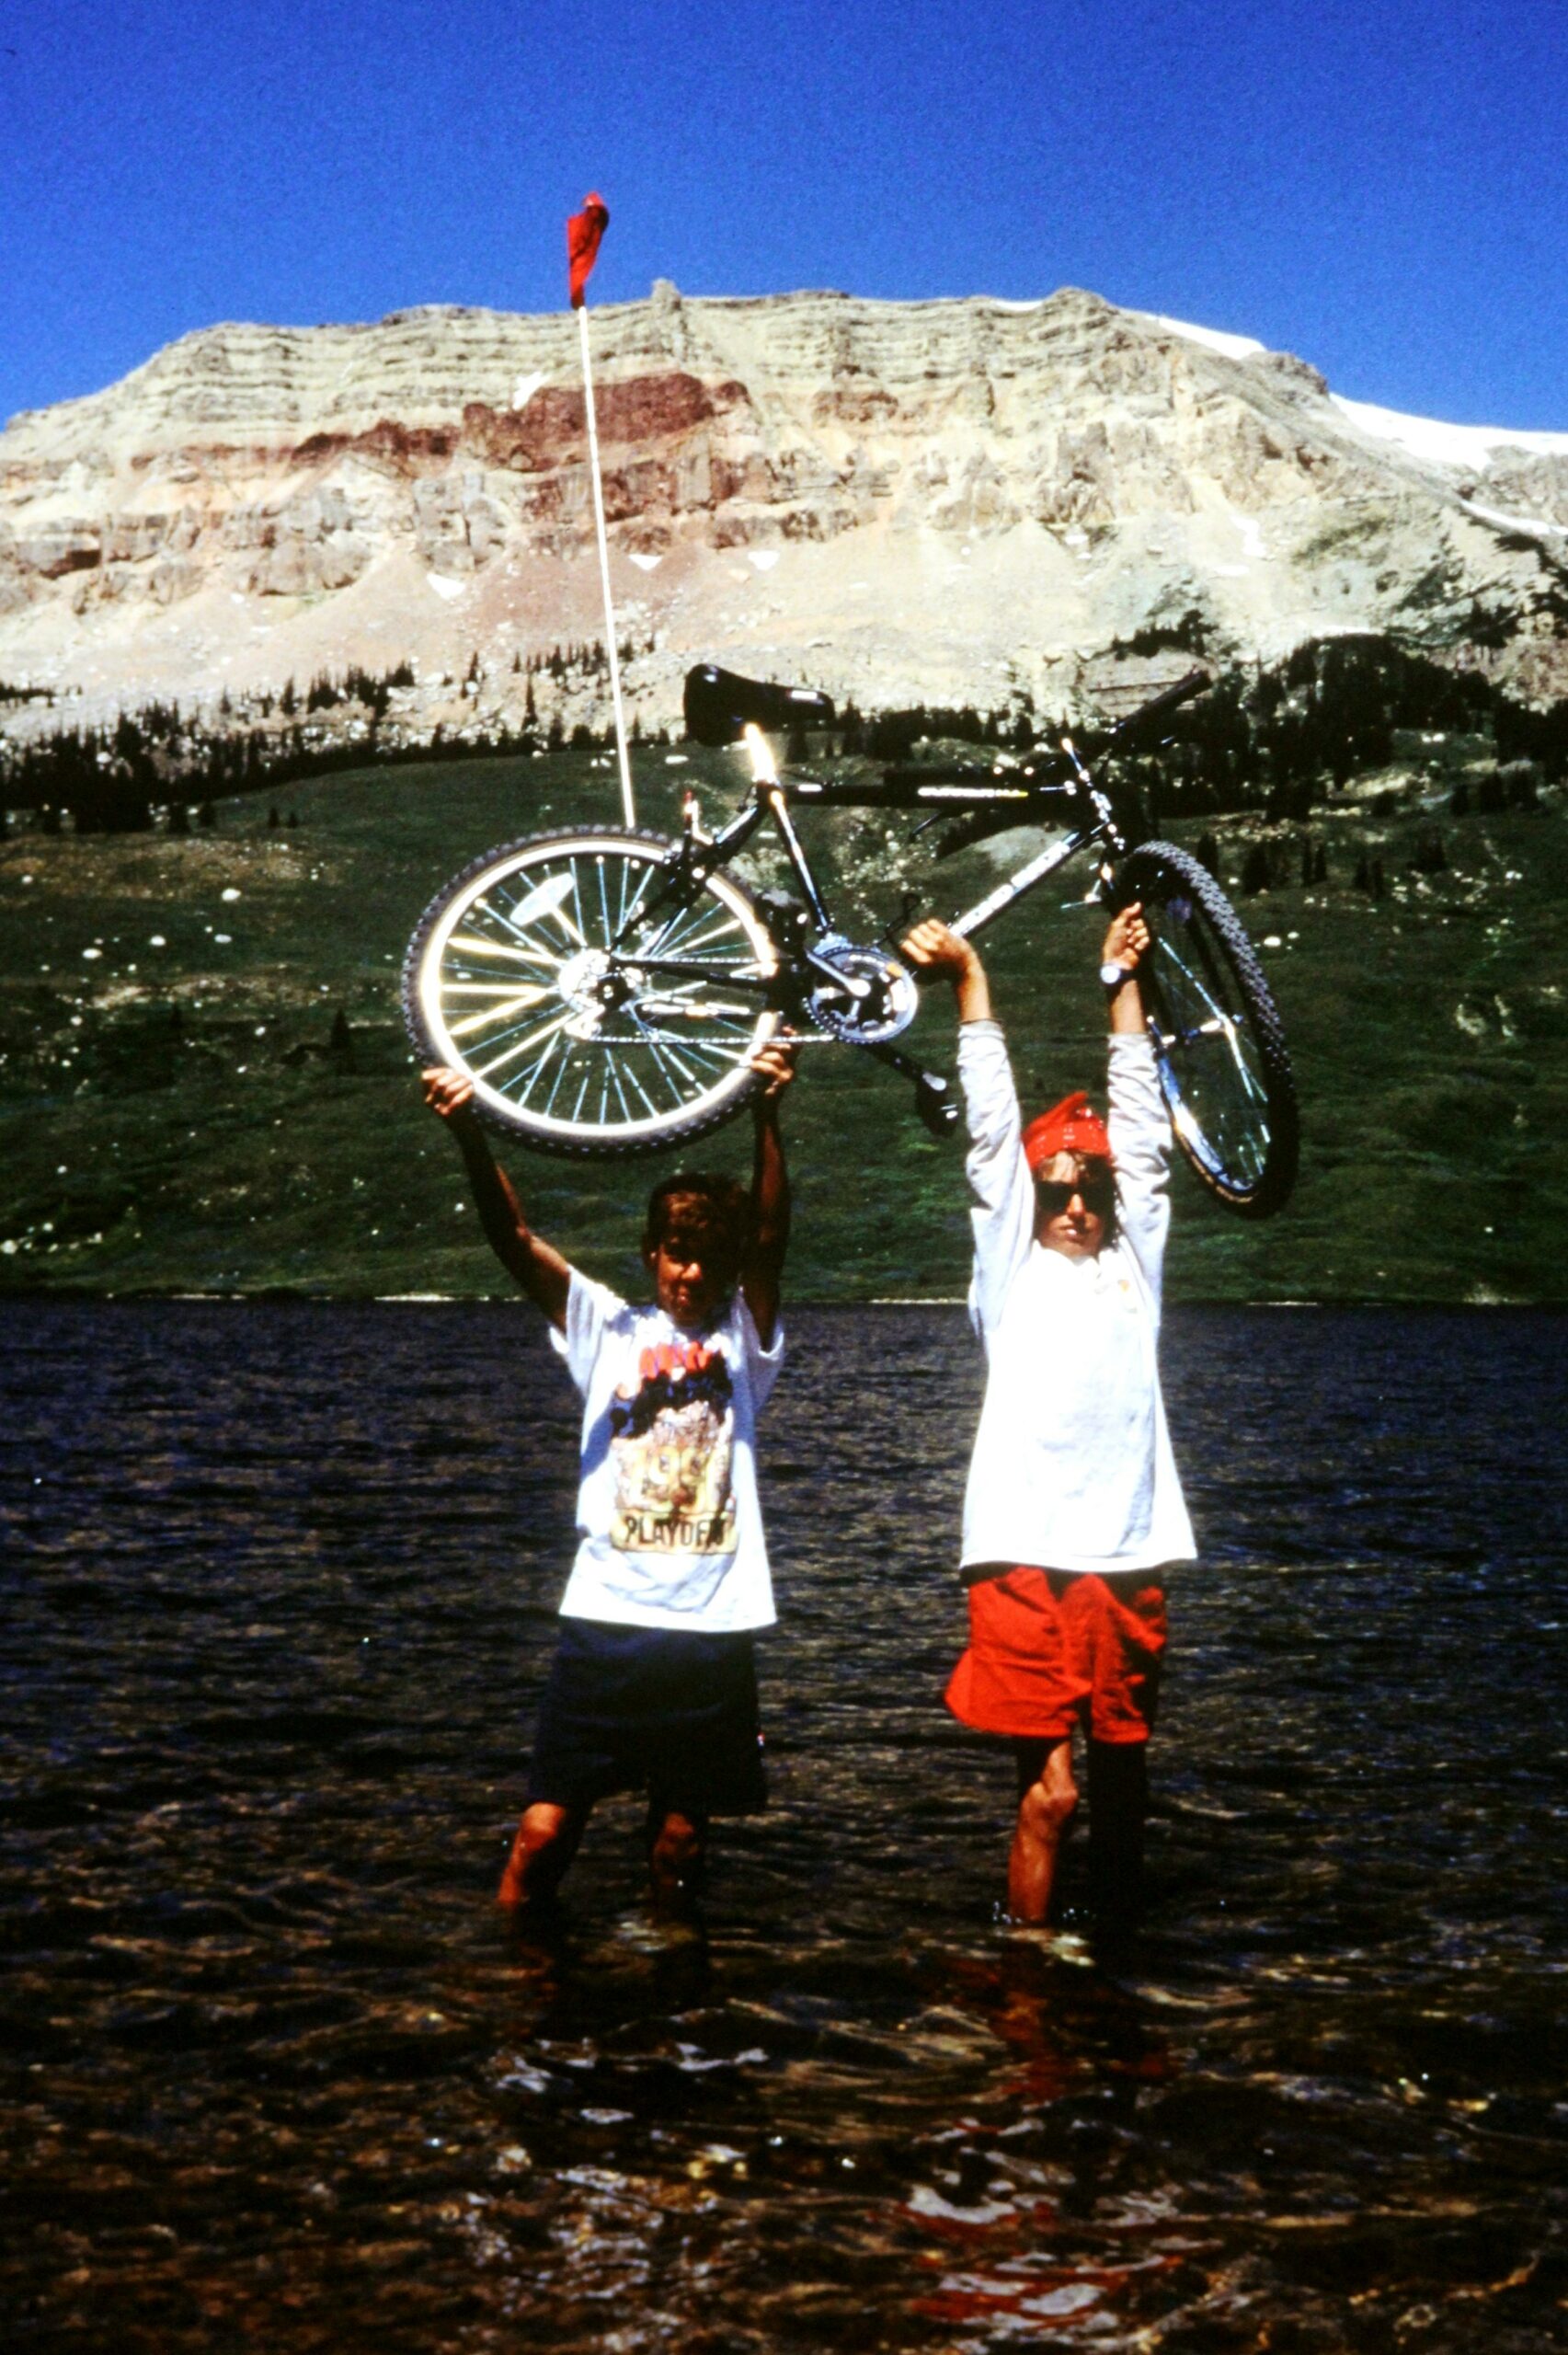 1993 Lifting up a bike